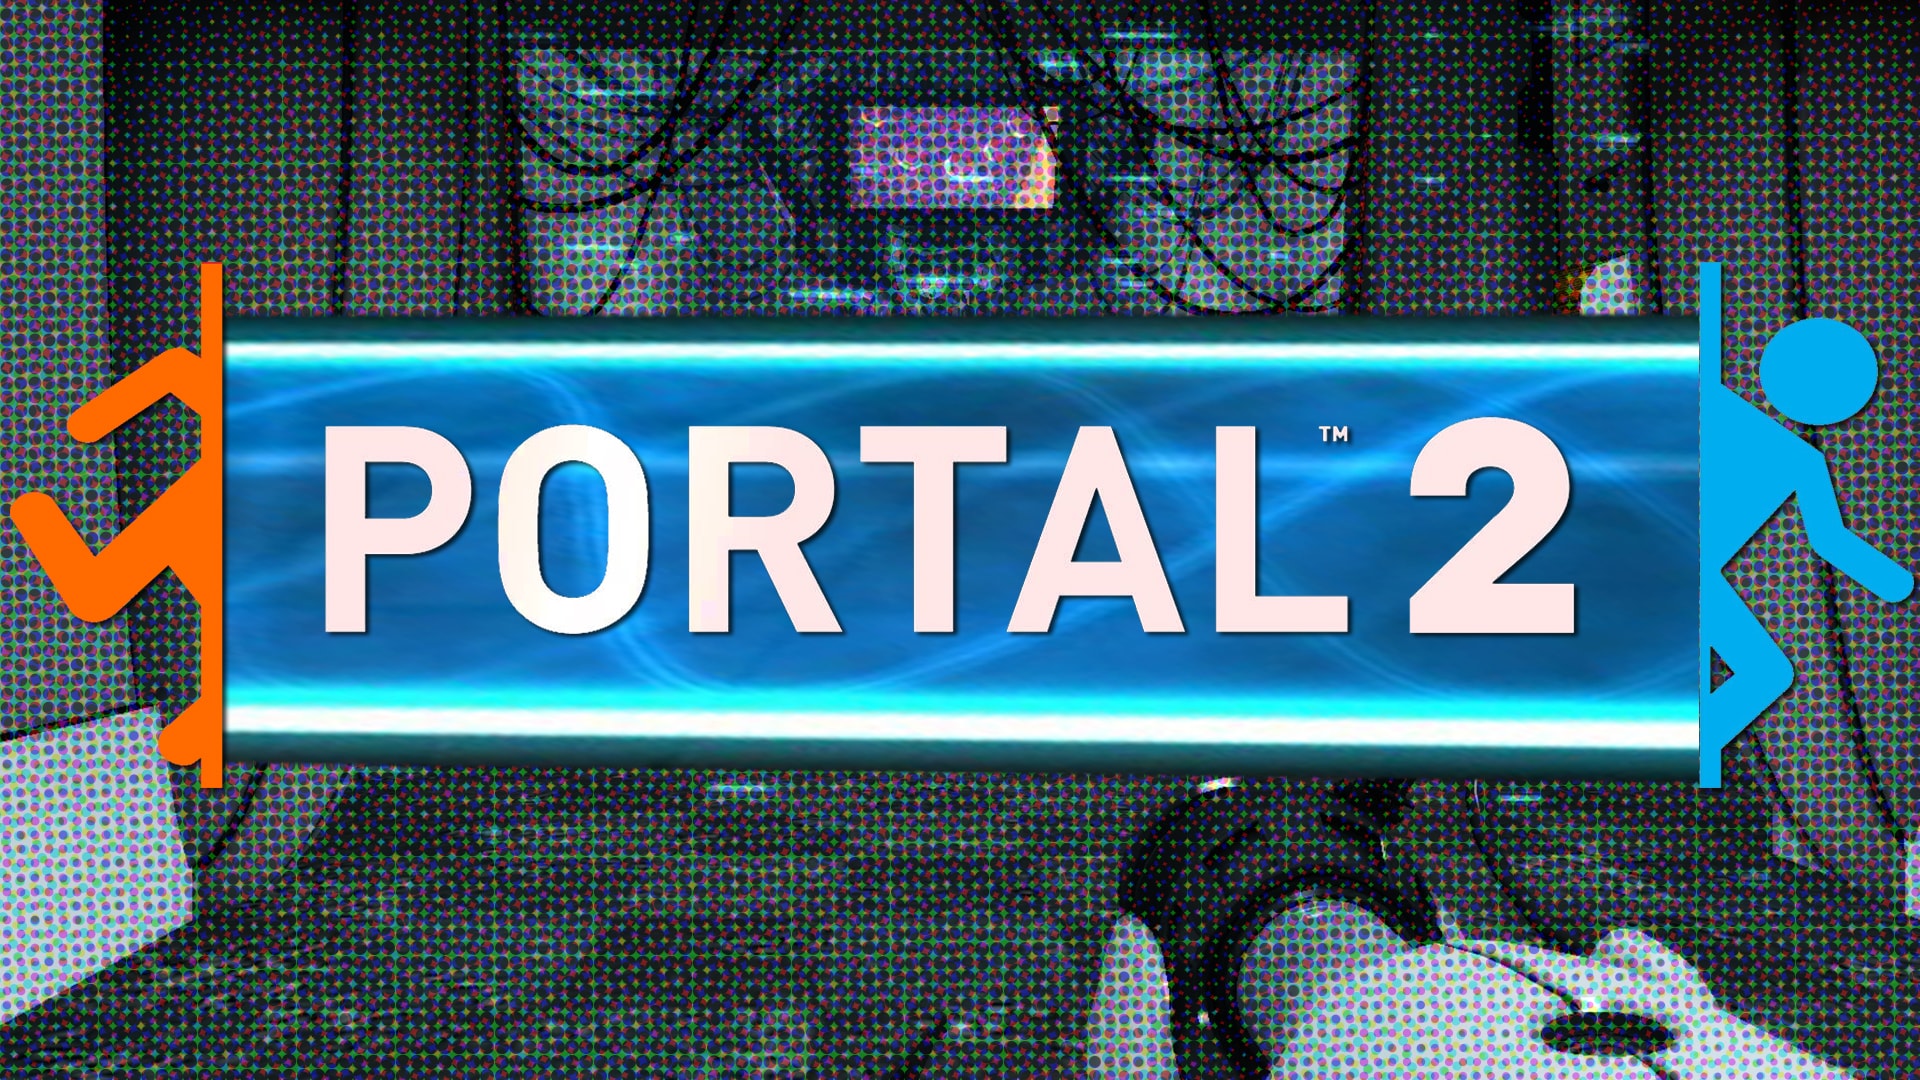 Portal 2 Wallpaper by Kill3rCr0x